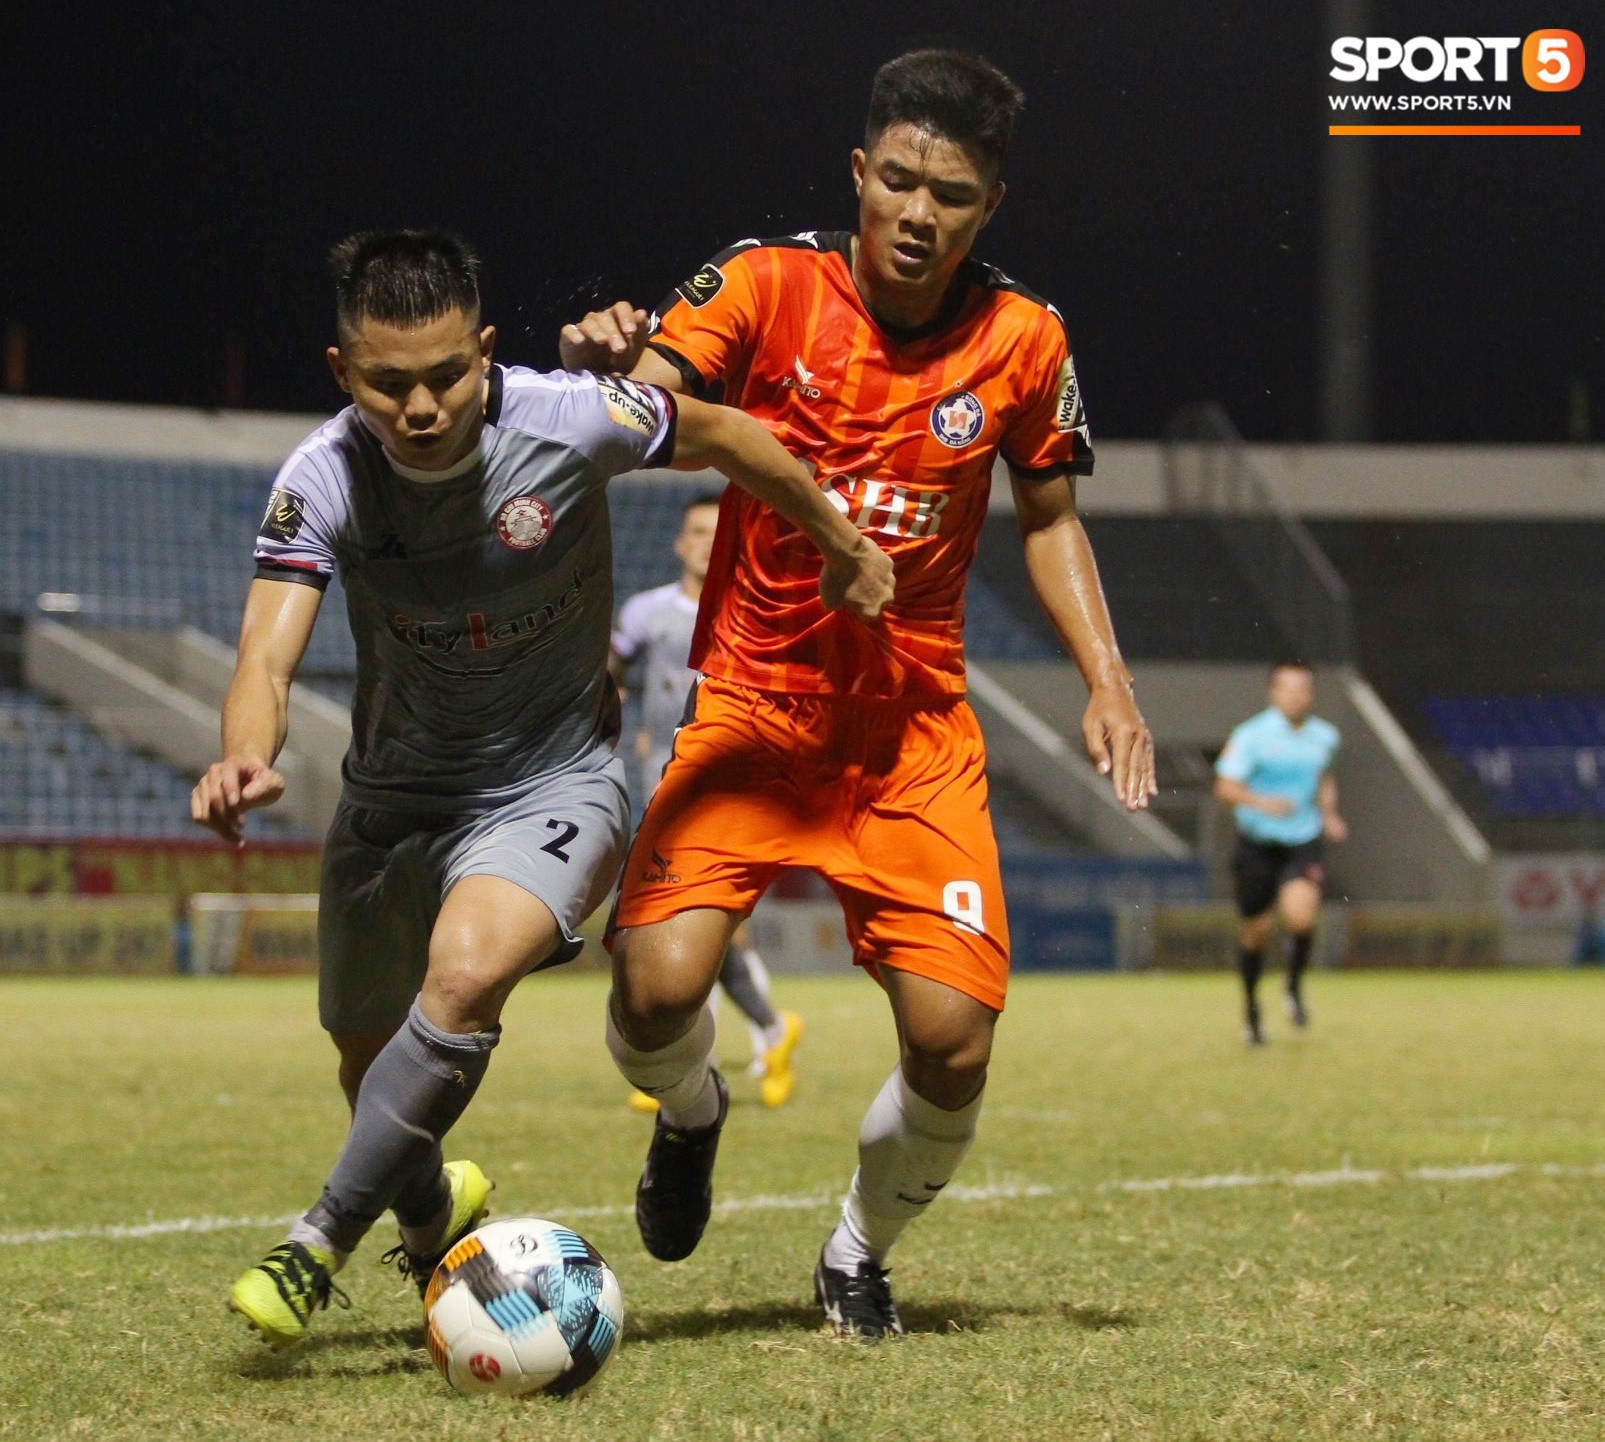 Đức Chinh dẹp tan nghi ngờ bằng bàn thắng vào lưới đội đầu bảng V.League, tân binh U23 tỏa sáng giúp Thanh Hóa nối dài chuỗi trận bất bại - Ảnh 3.